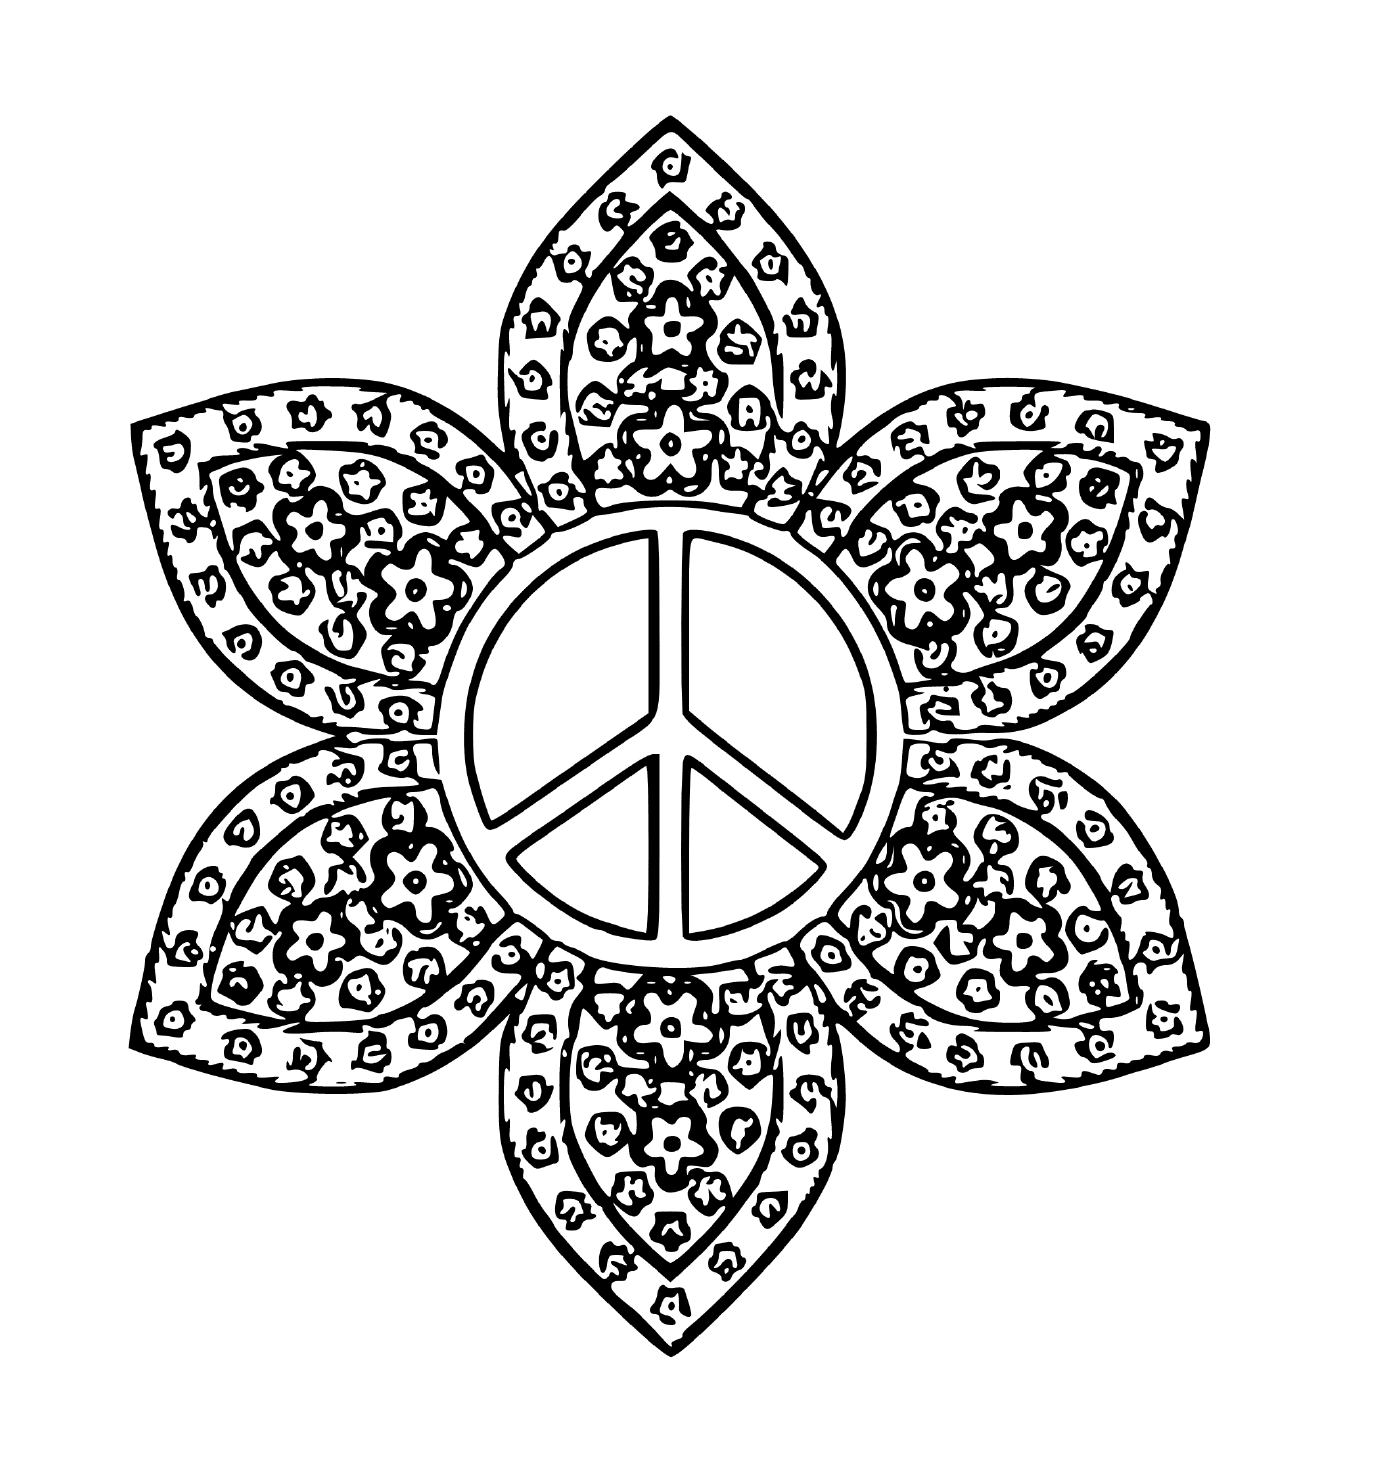   Logo de paix avec des fleurs 